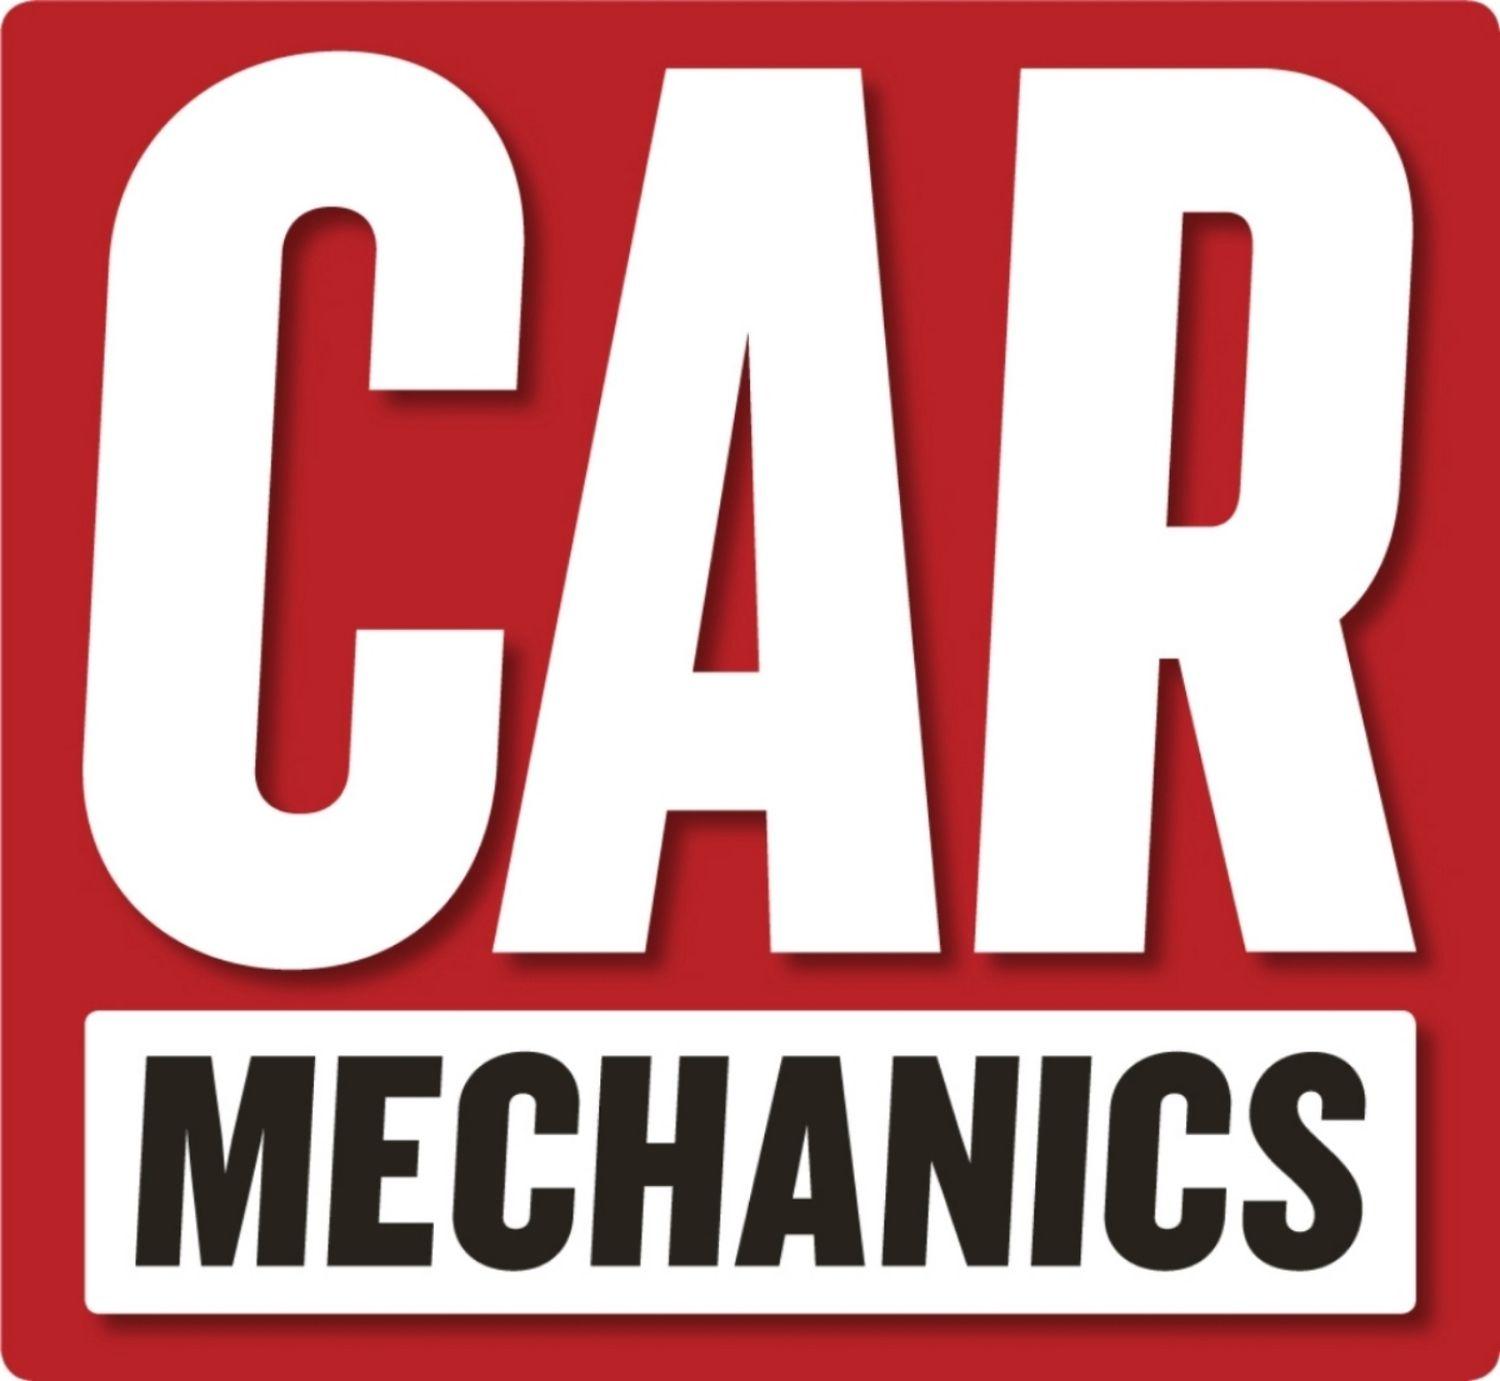 Mechanic Auto Repair Logo - Back Issues — Car Mechanics